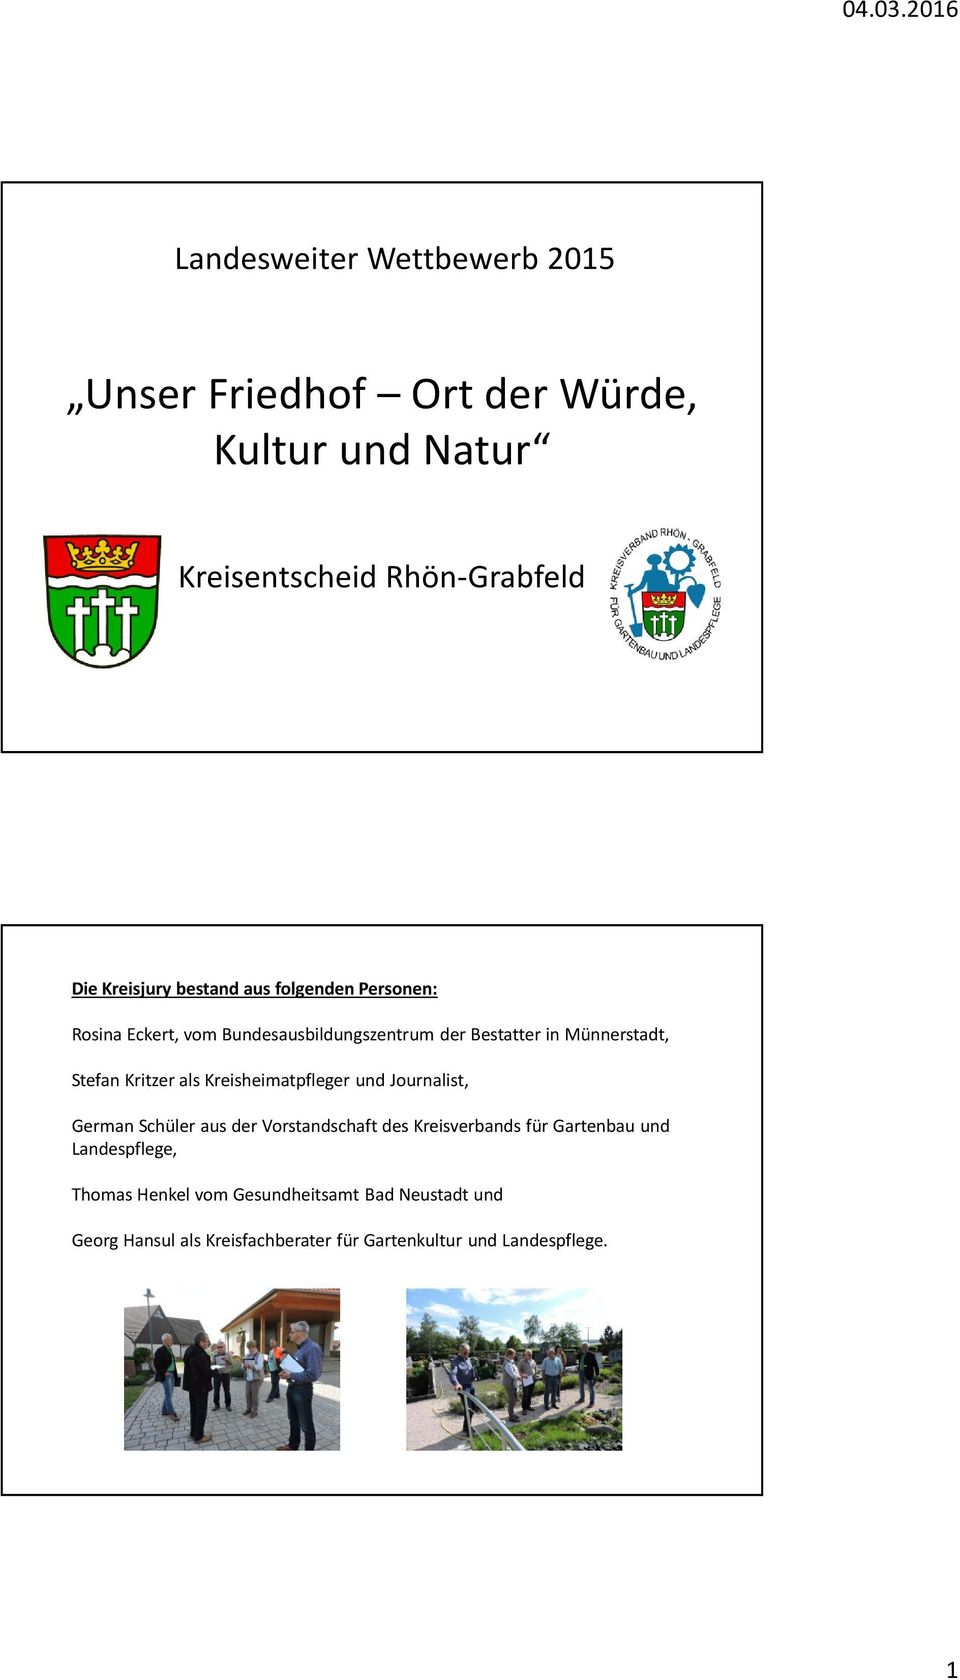 Kritzerals Kreisheimatpfleger und Journalist, German Schüler aus der Vorstandschaft des Kreisverbands für Gartenbau und